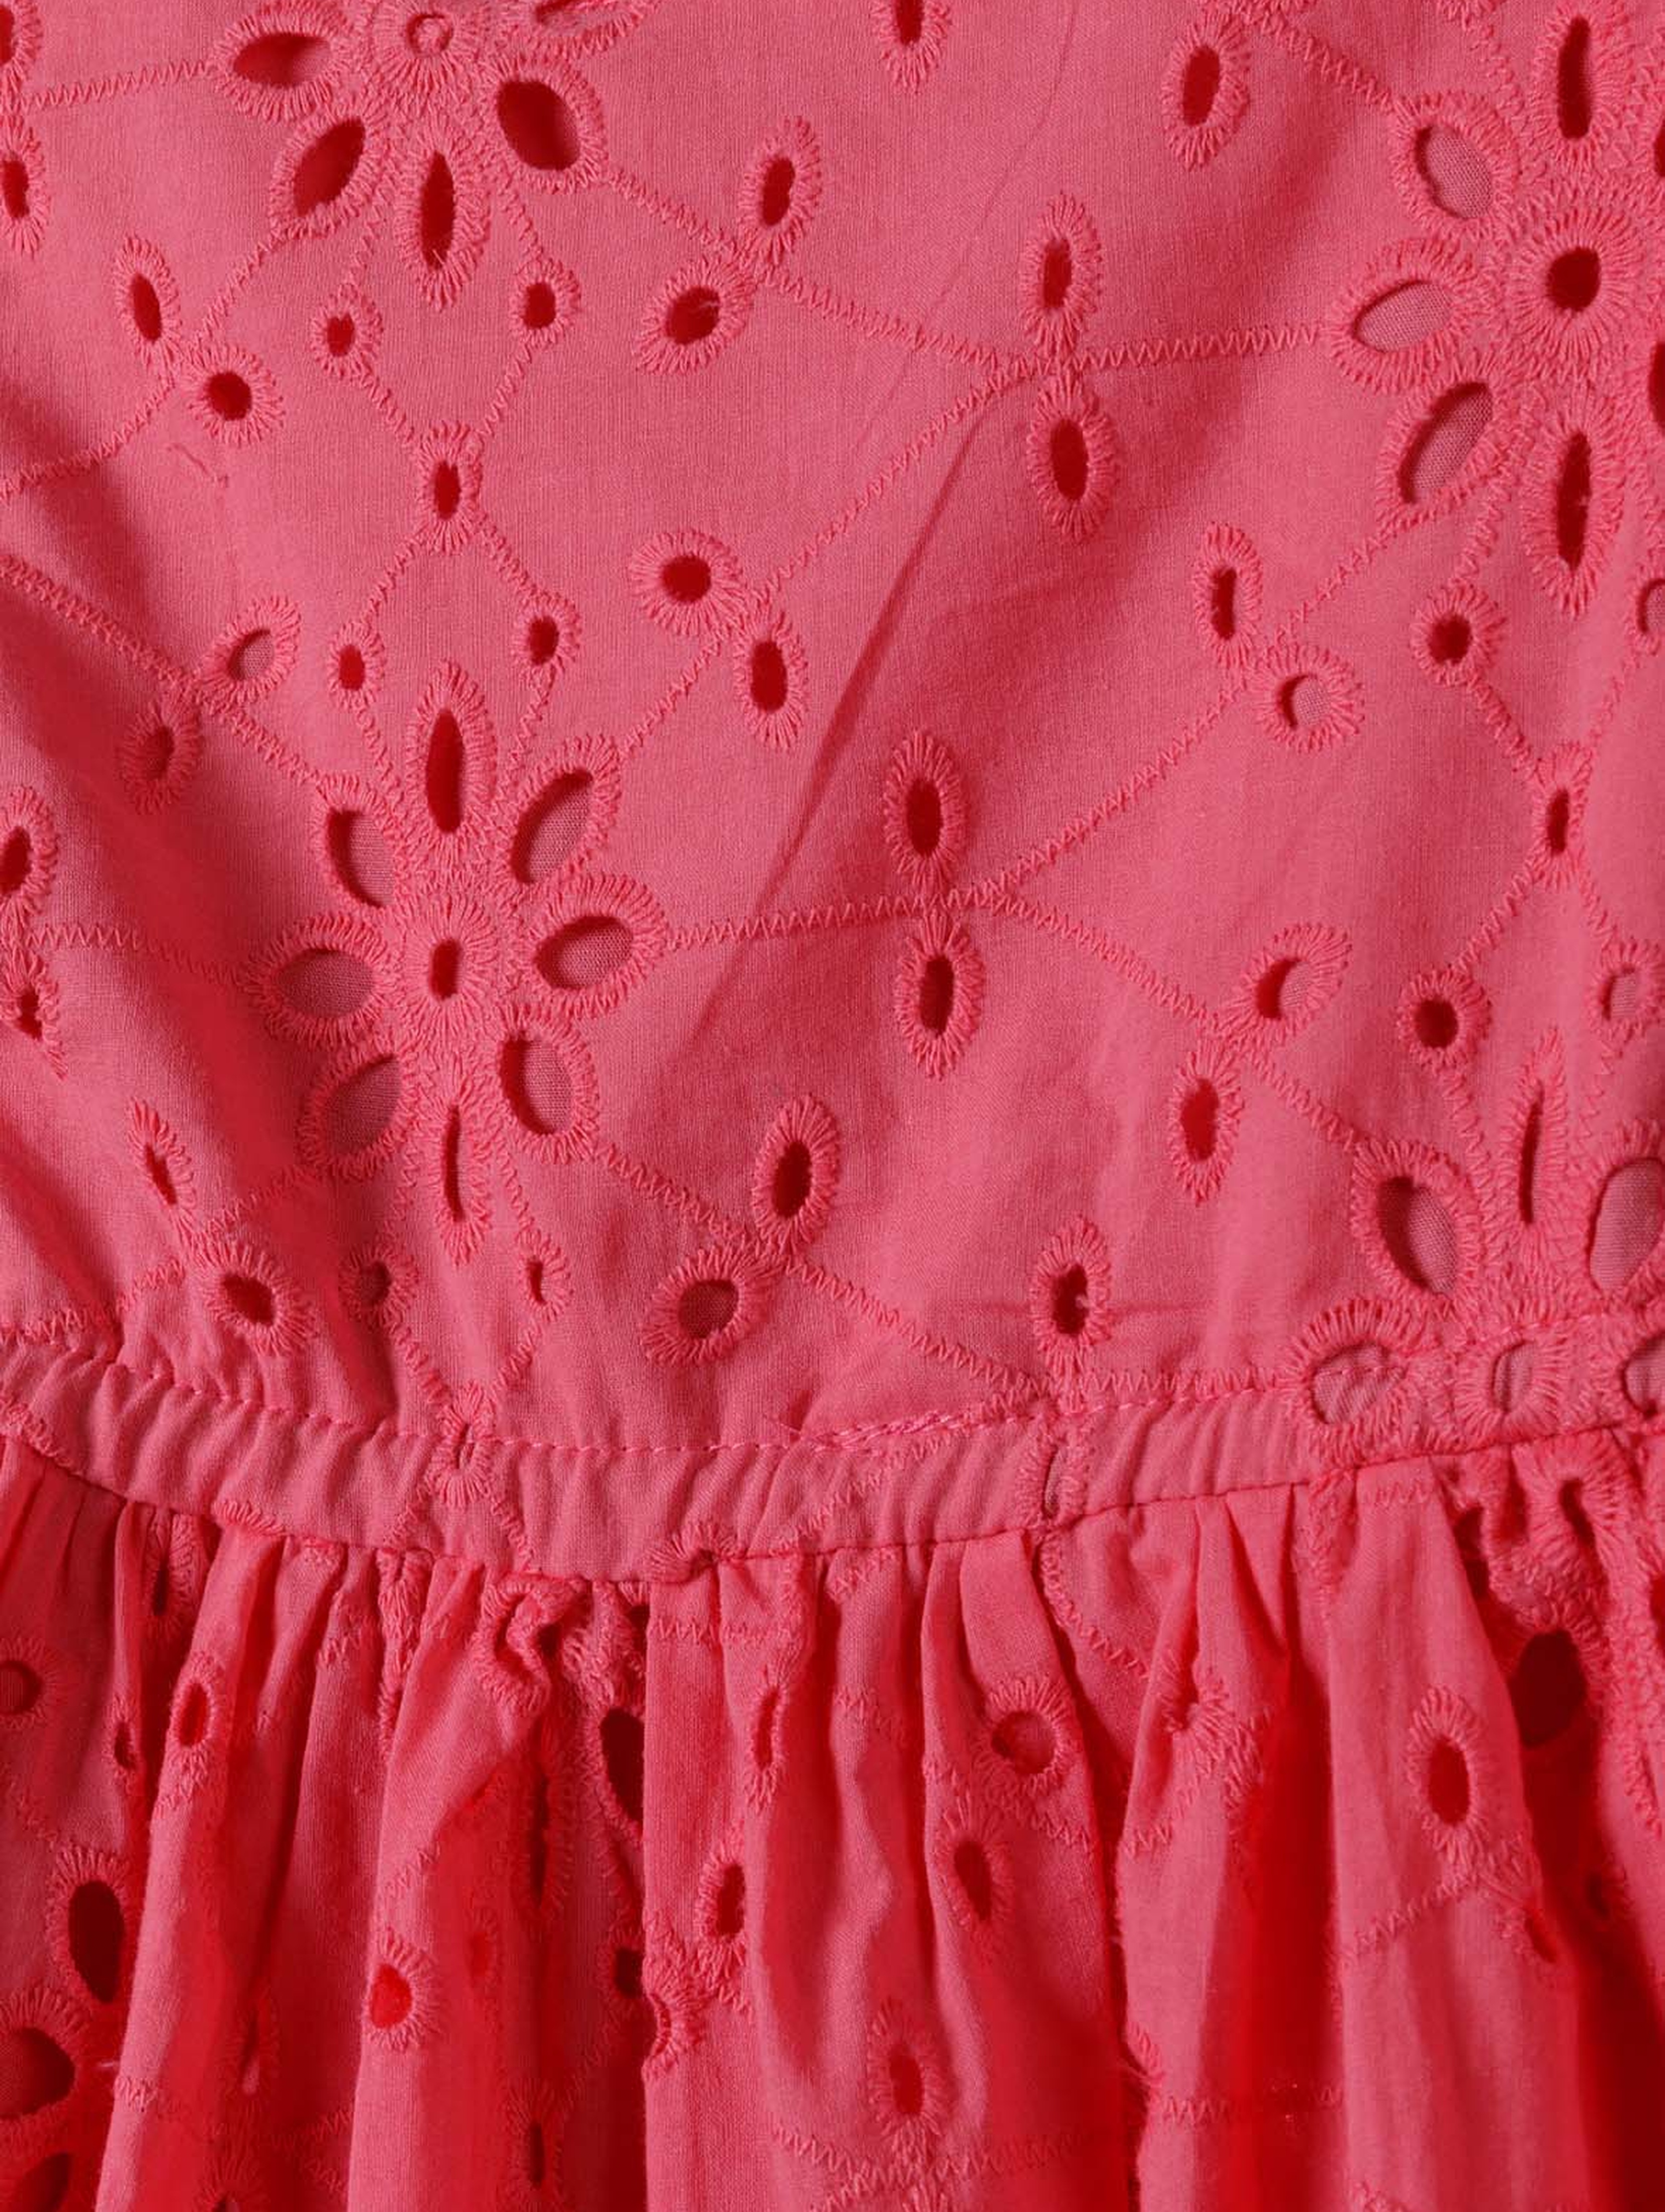 Letnia sukienka różowa z haftowanej tkaniny dla dziewczynki